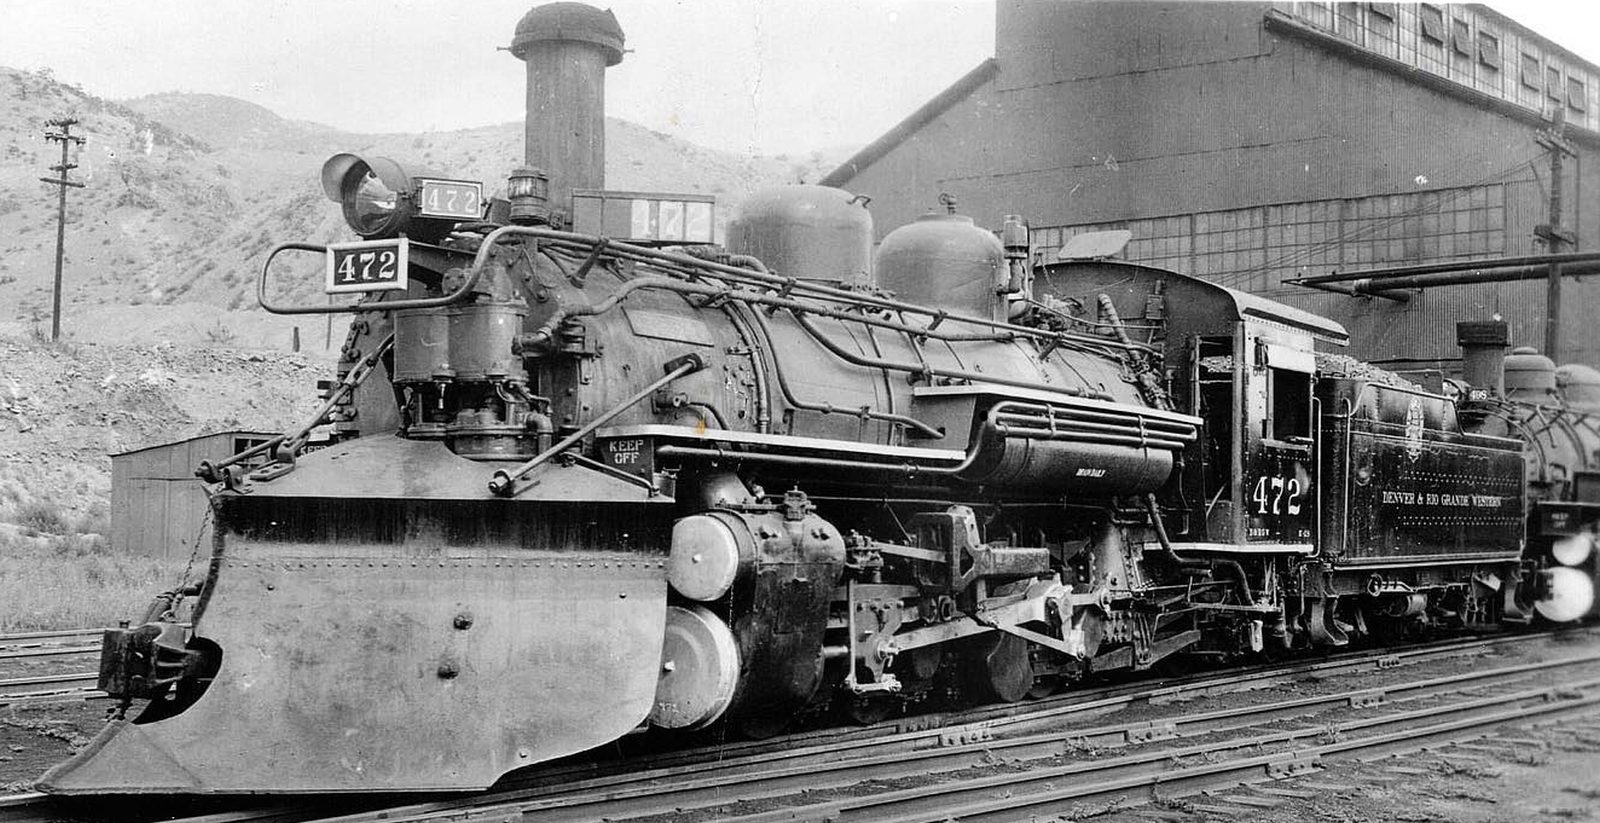 No. 472 in July 1938 in Salida, Colorado